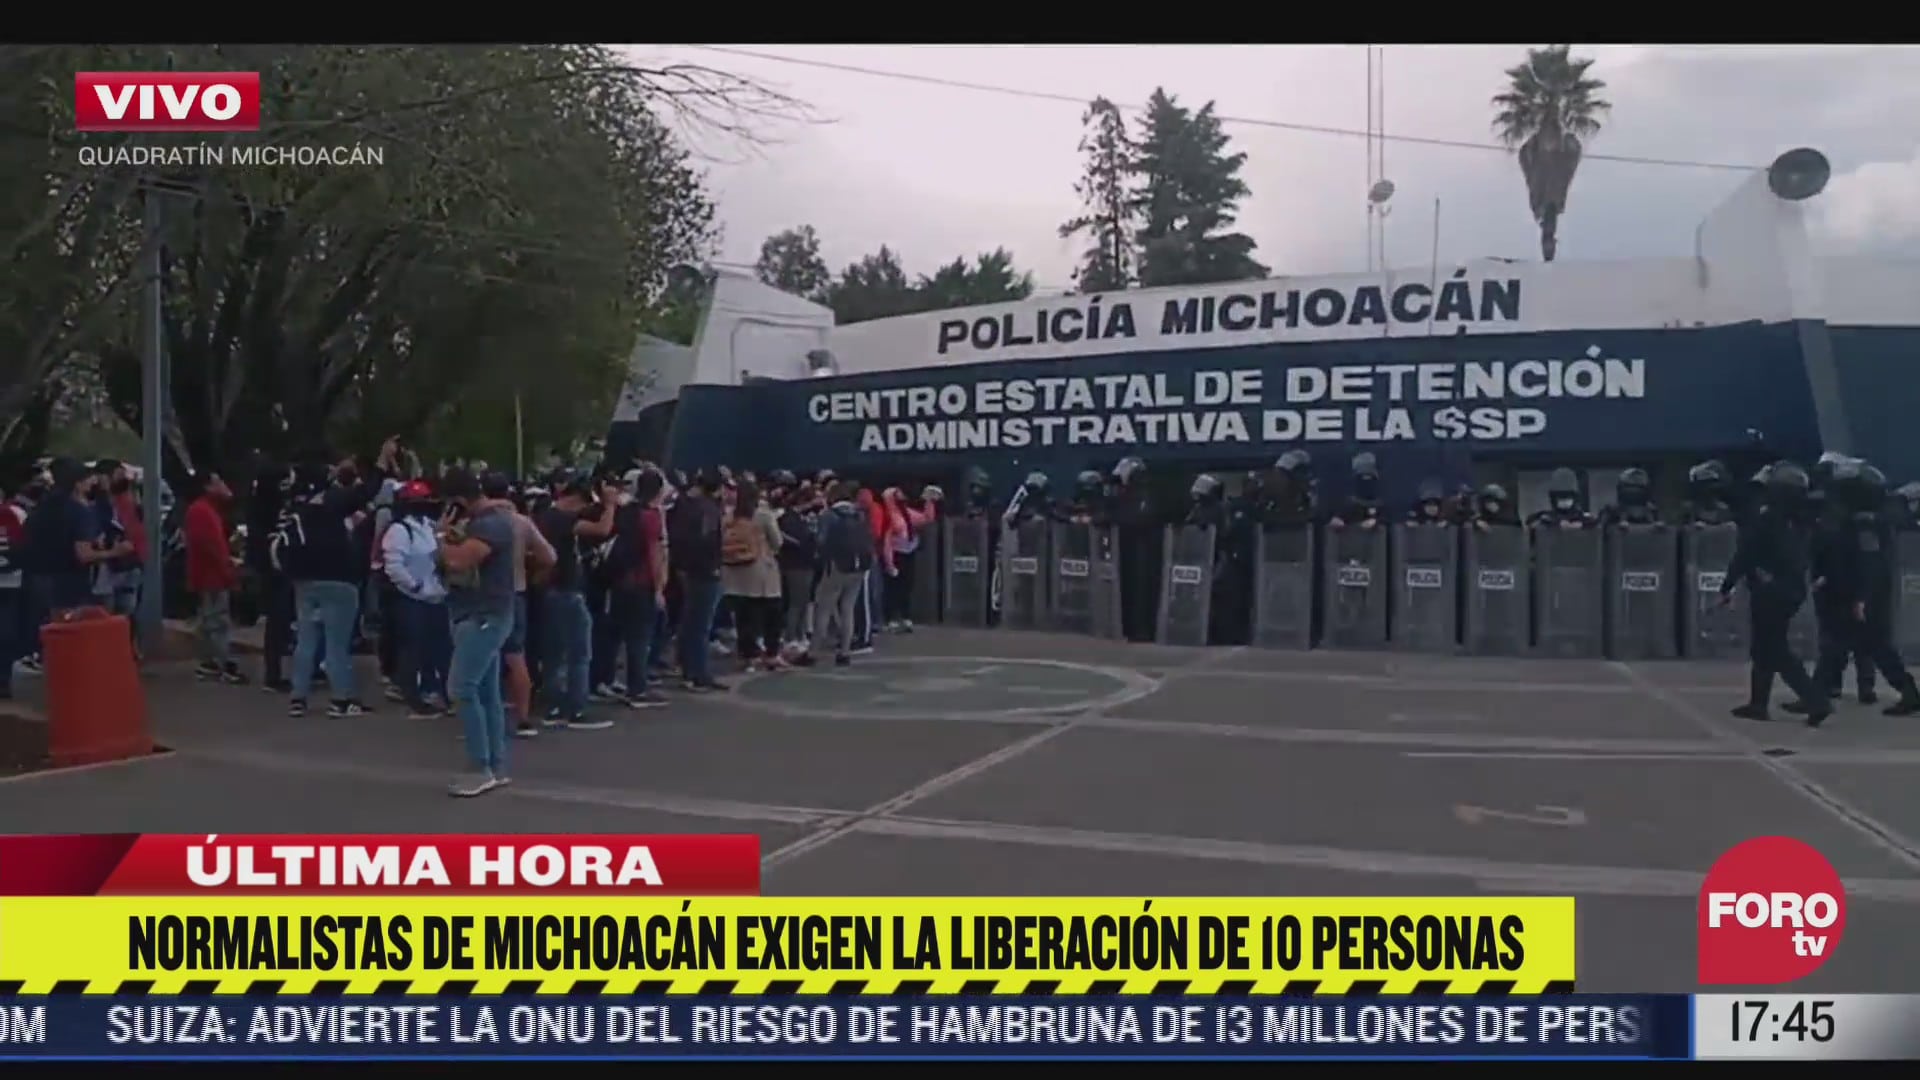 normalistas en michoacan exigen la liberacion de 10 personas